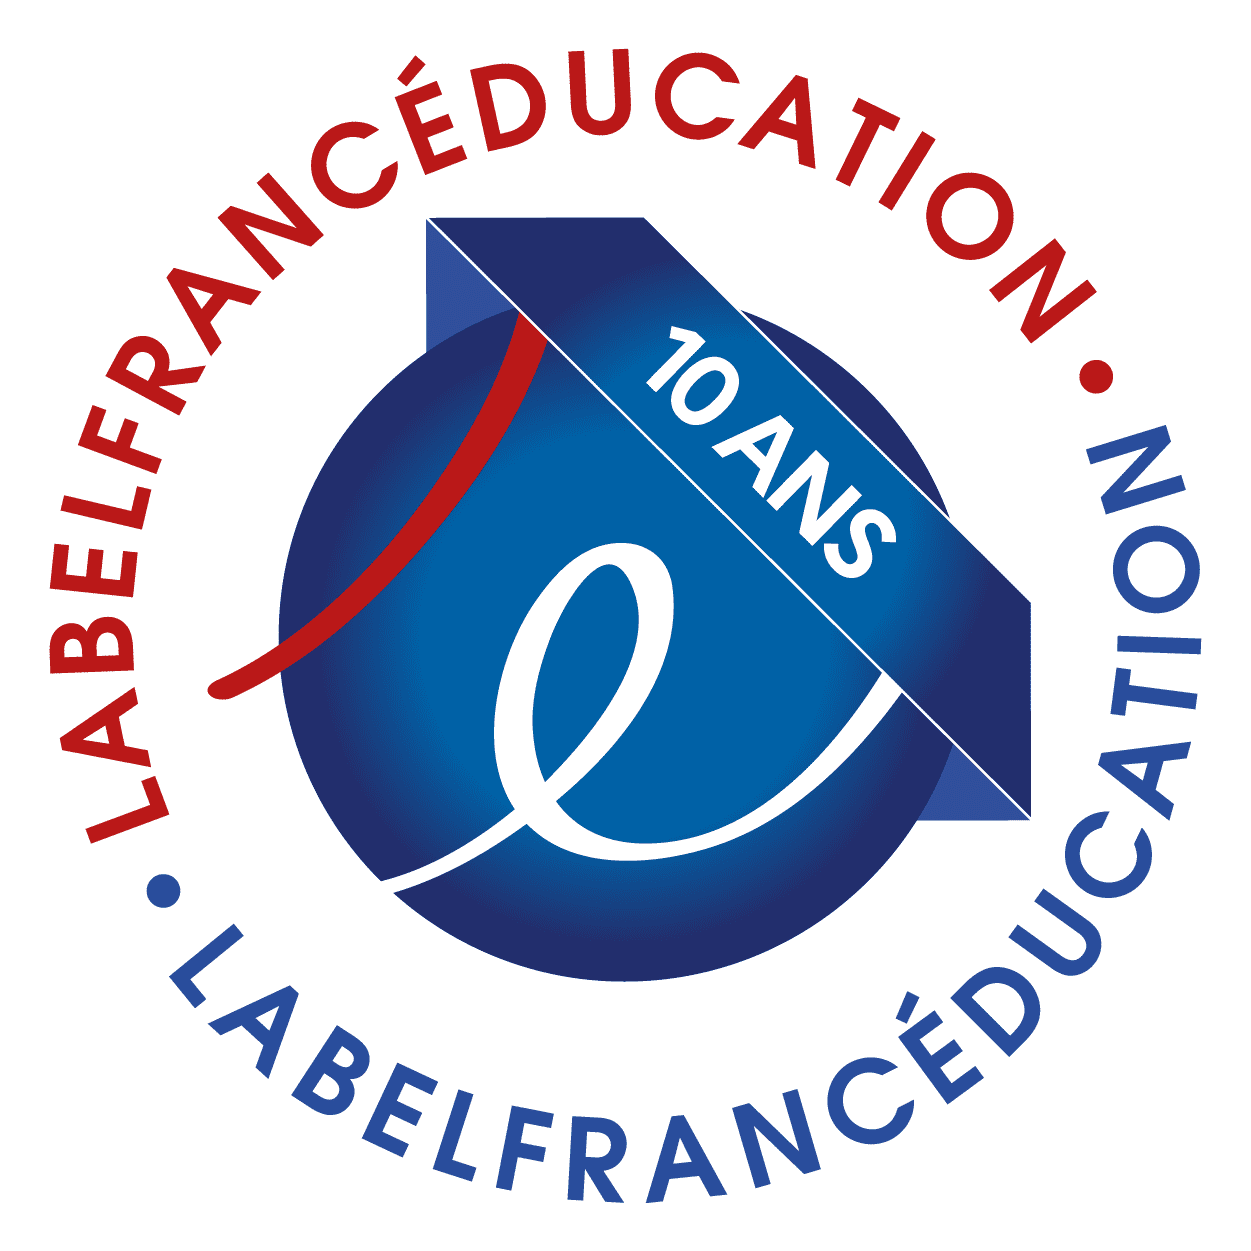 Unsere Schule erhält ein Zertifikat des französischen Außenministeriums